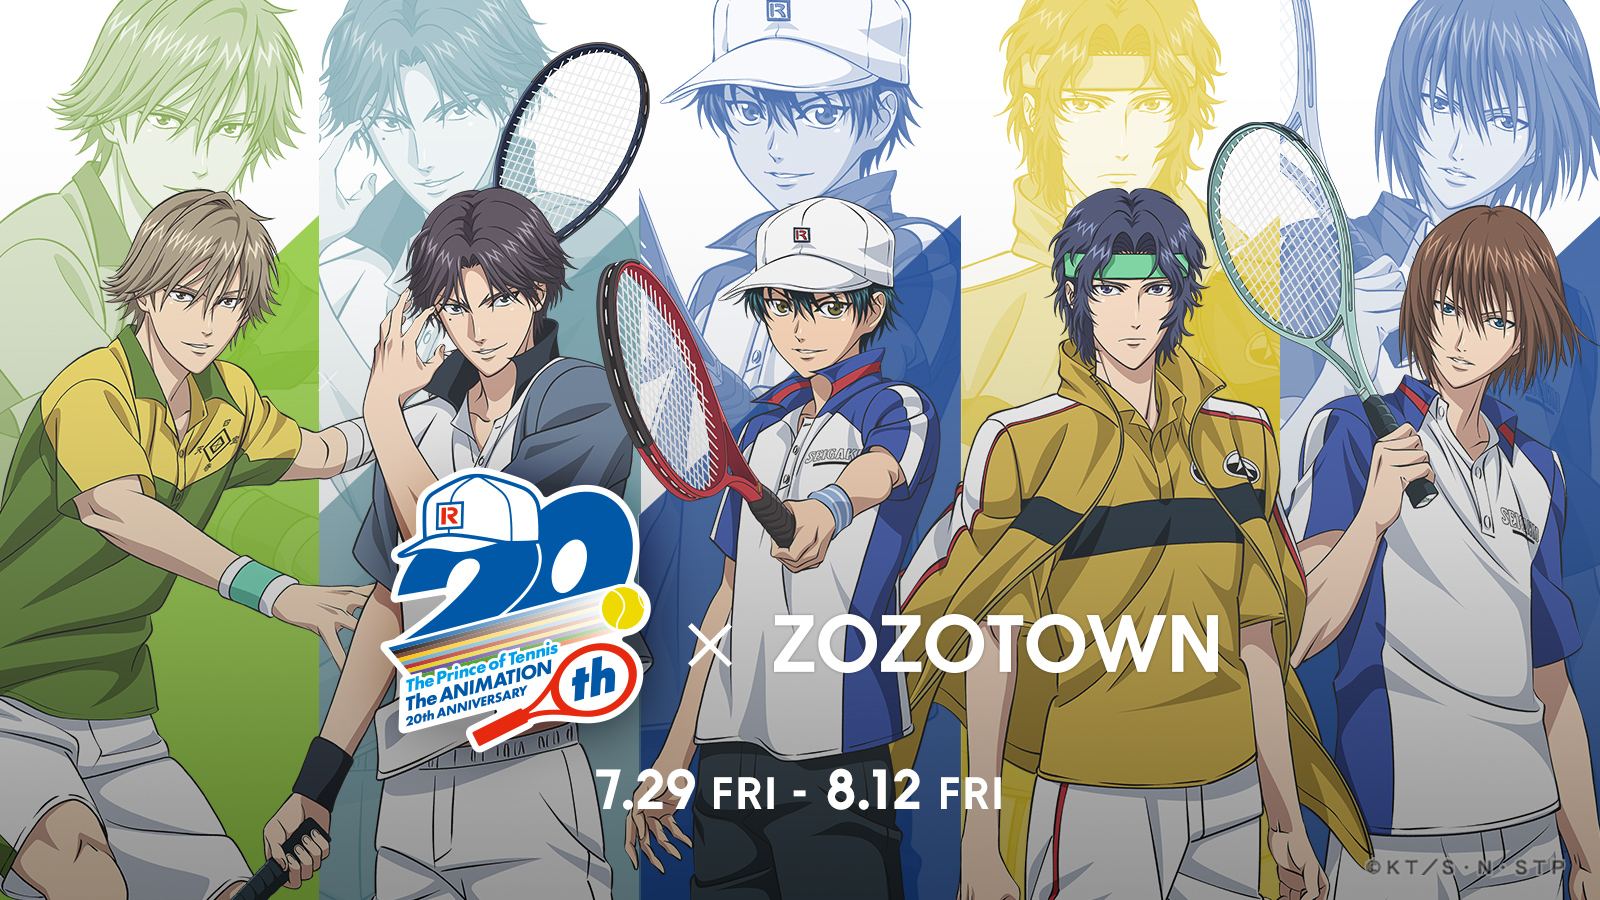 アニメ 新テニスの王子様 とzozotownがコラボ ゆるいタッチの描き下ろしイラスト を使用した限定アイテムを7月29日より販売 株式会社zozoのプレスリリース